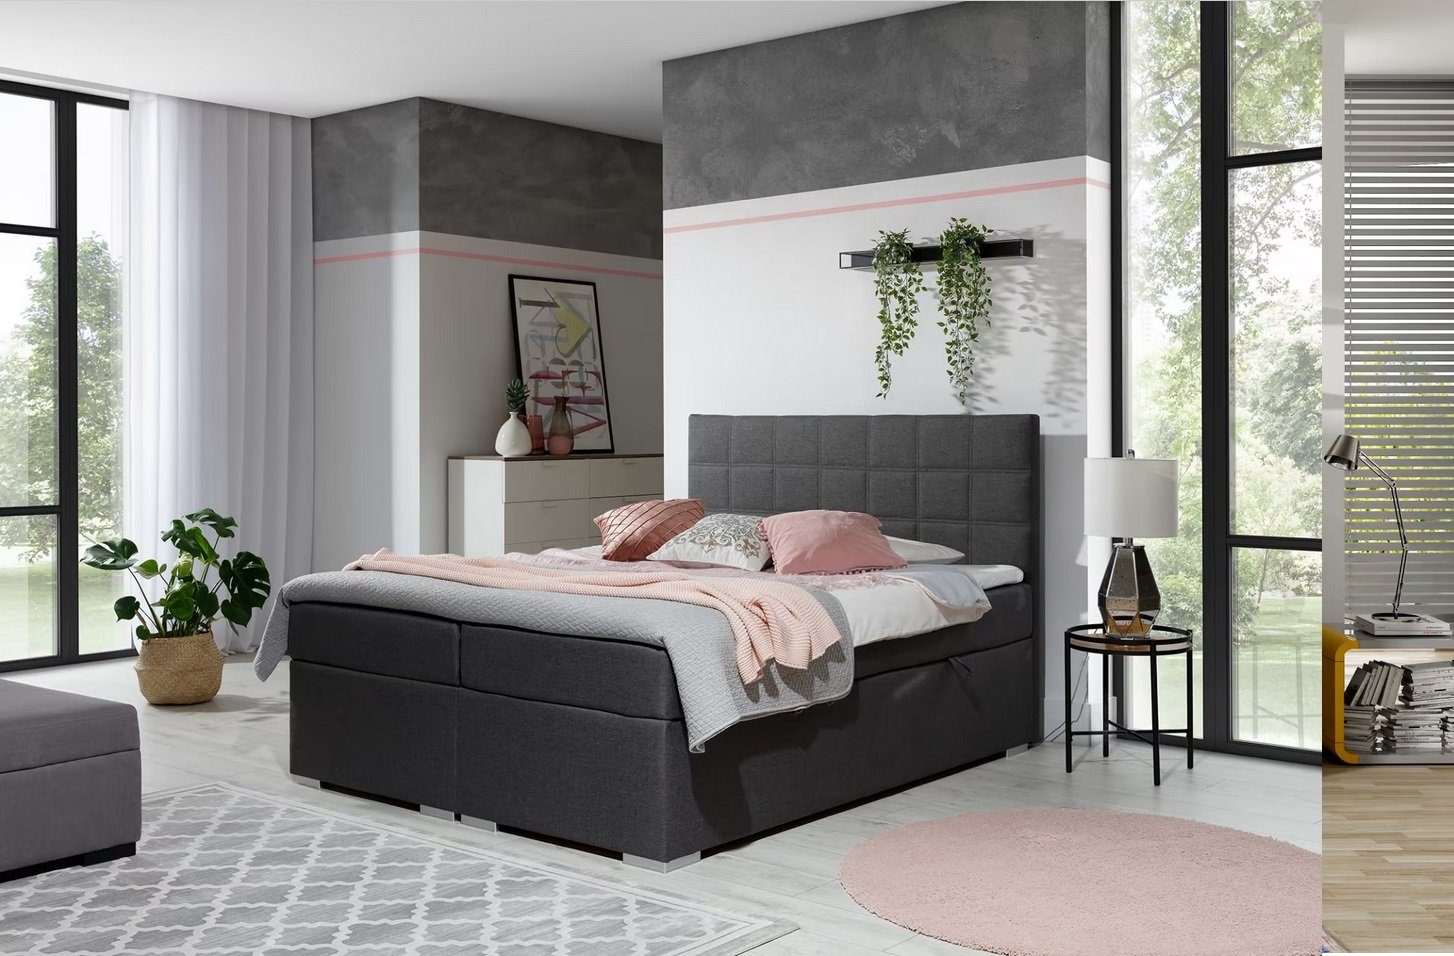 doppelbett mit federkernmatratze designer bett schlafzimmer modern